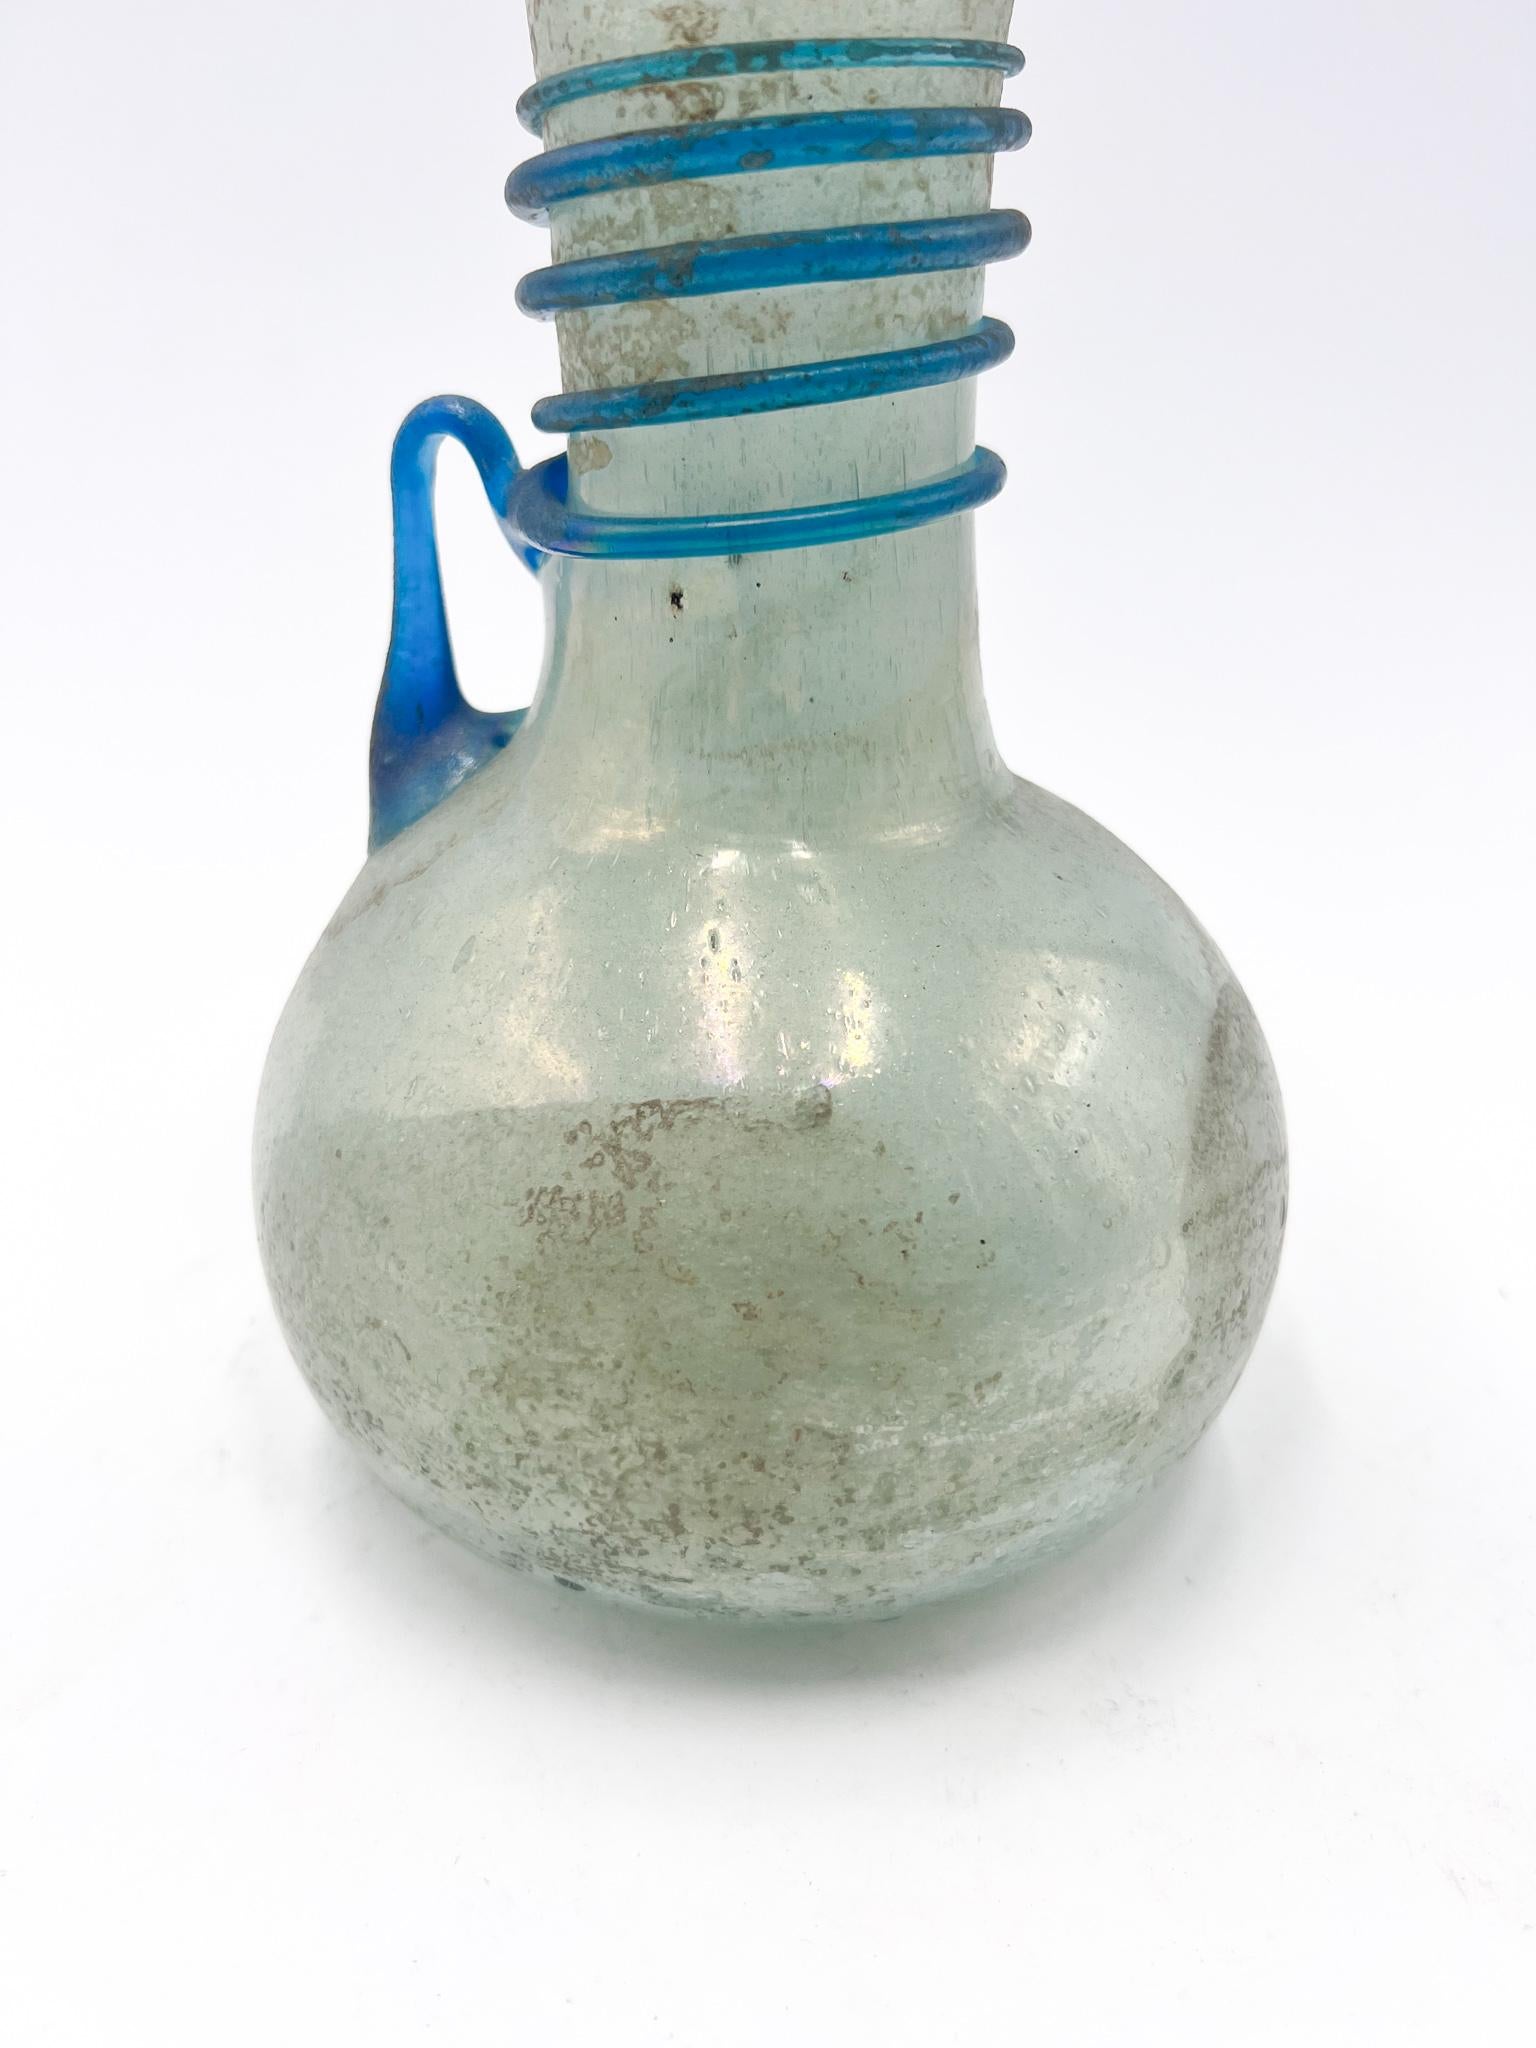 Vase bleu en verre Scavo di Cenedese réalisé dans les années 1950

Ø 13 cm h 19 cm

Le verre scavo est un type de verre ornemental dont la surface rugueuse présente une finition mate à l'imitation du verre antique, à dominante grise, mais aussi avec